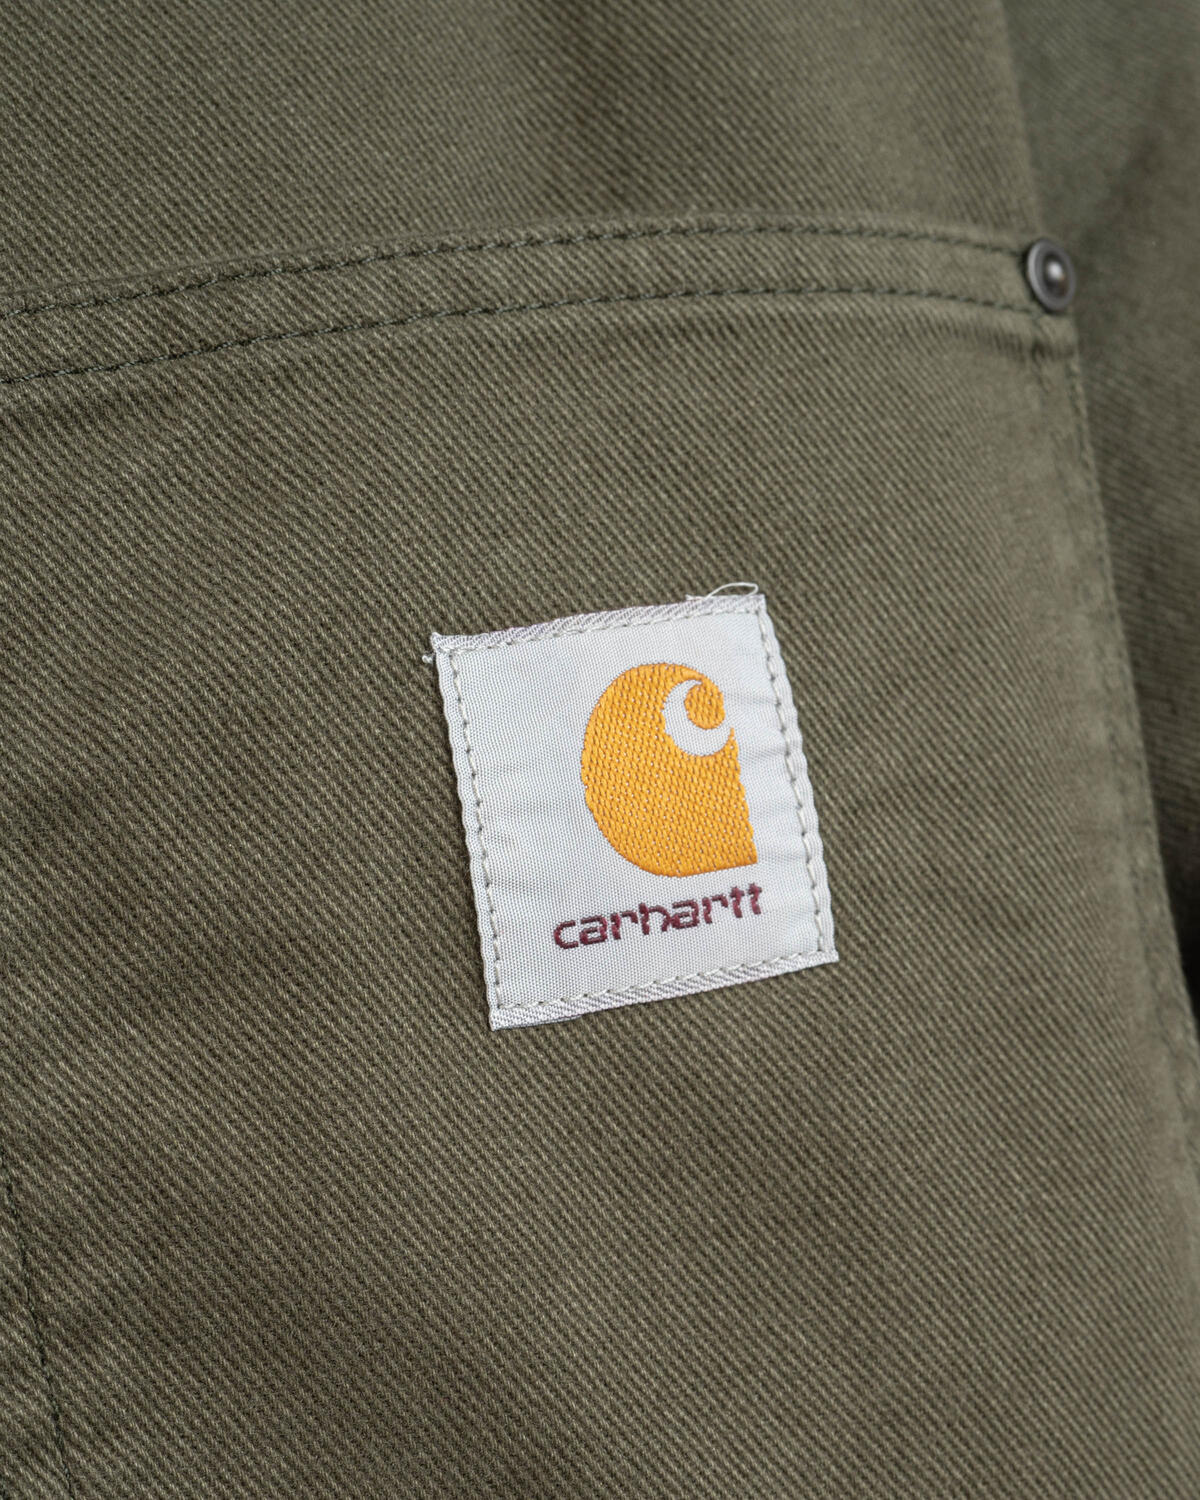 Carhartt WIP Derby Shirt Jacket, I032370.502